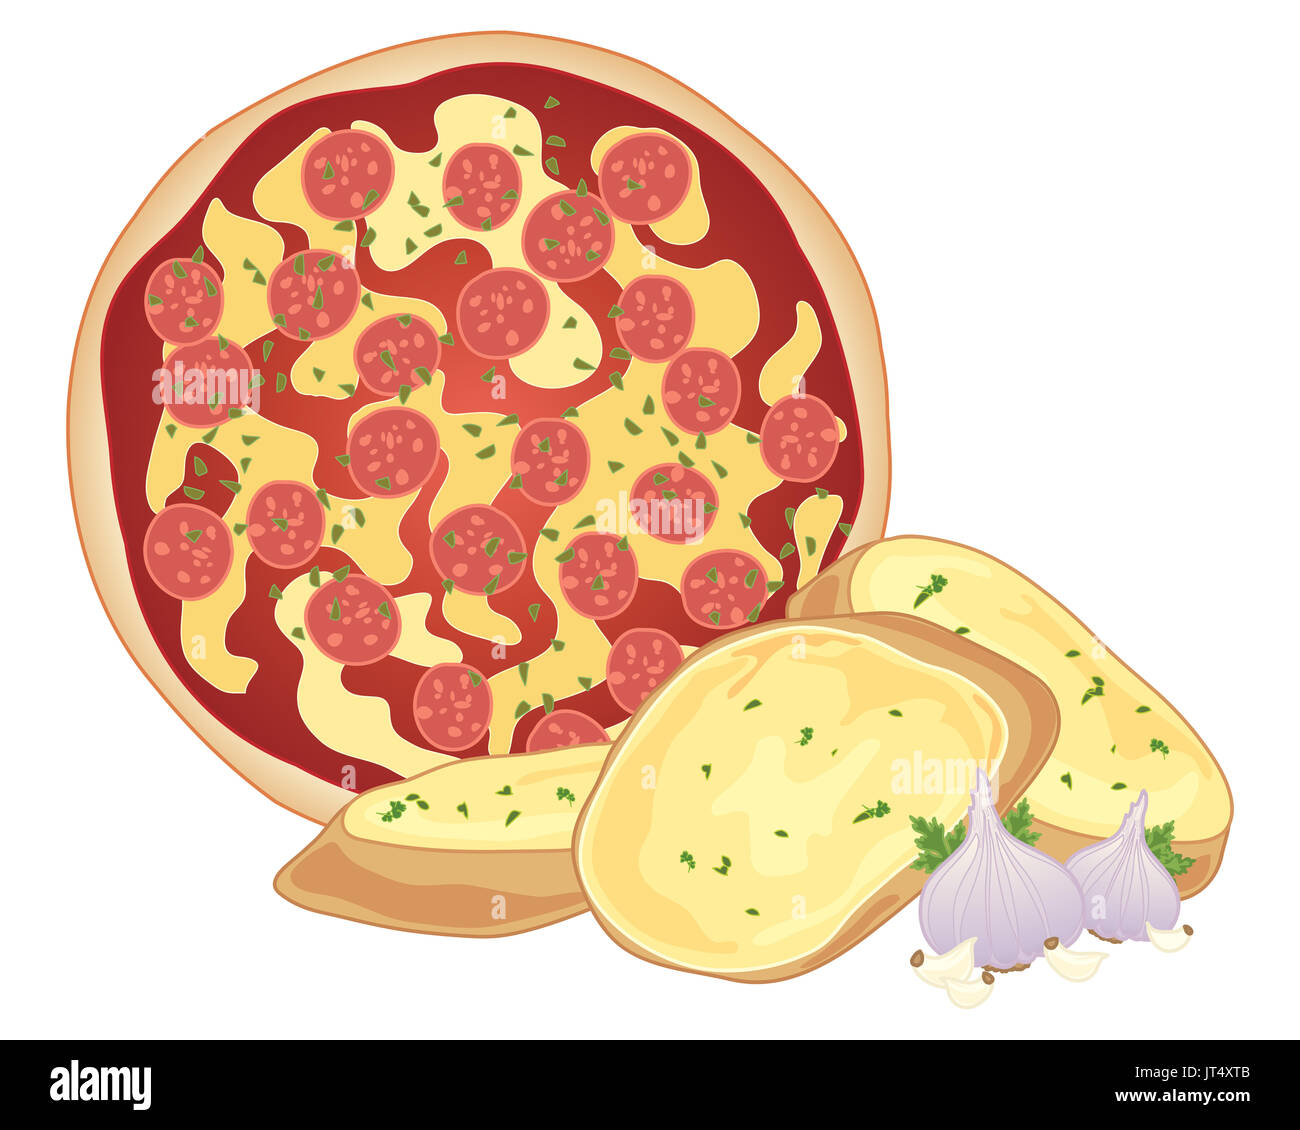 Una illustrazione di una salsiccia per pizza pizza con croccante di aglio fresco pane amd bulbi di aglio su sfondo bianco Foto Stock